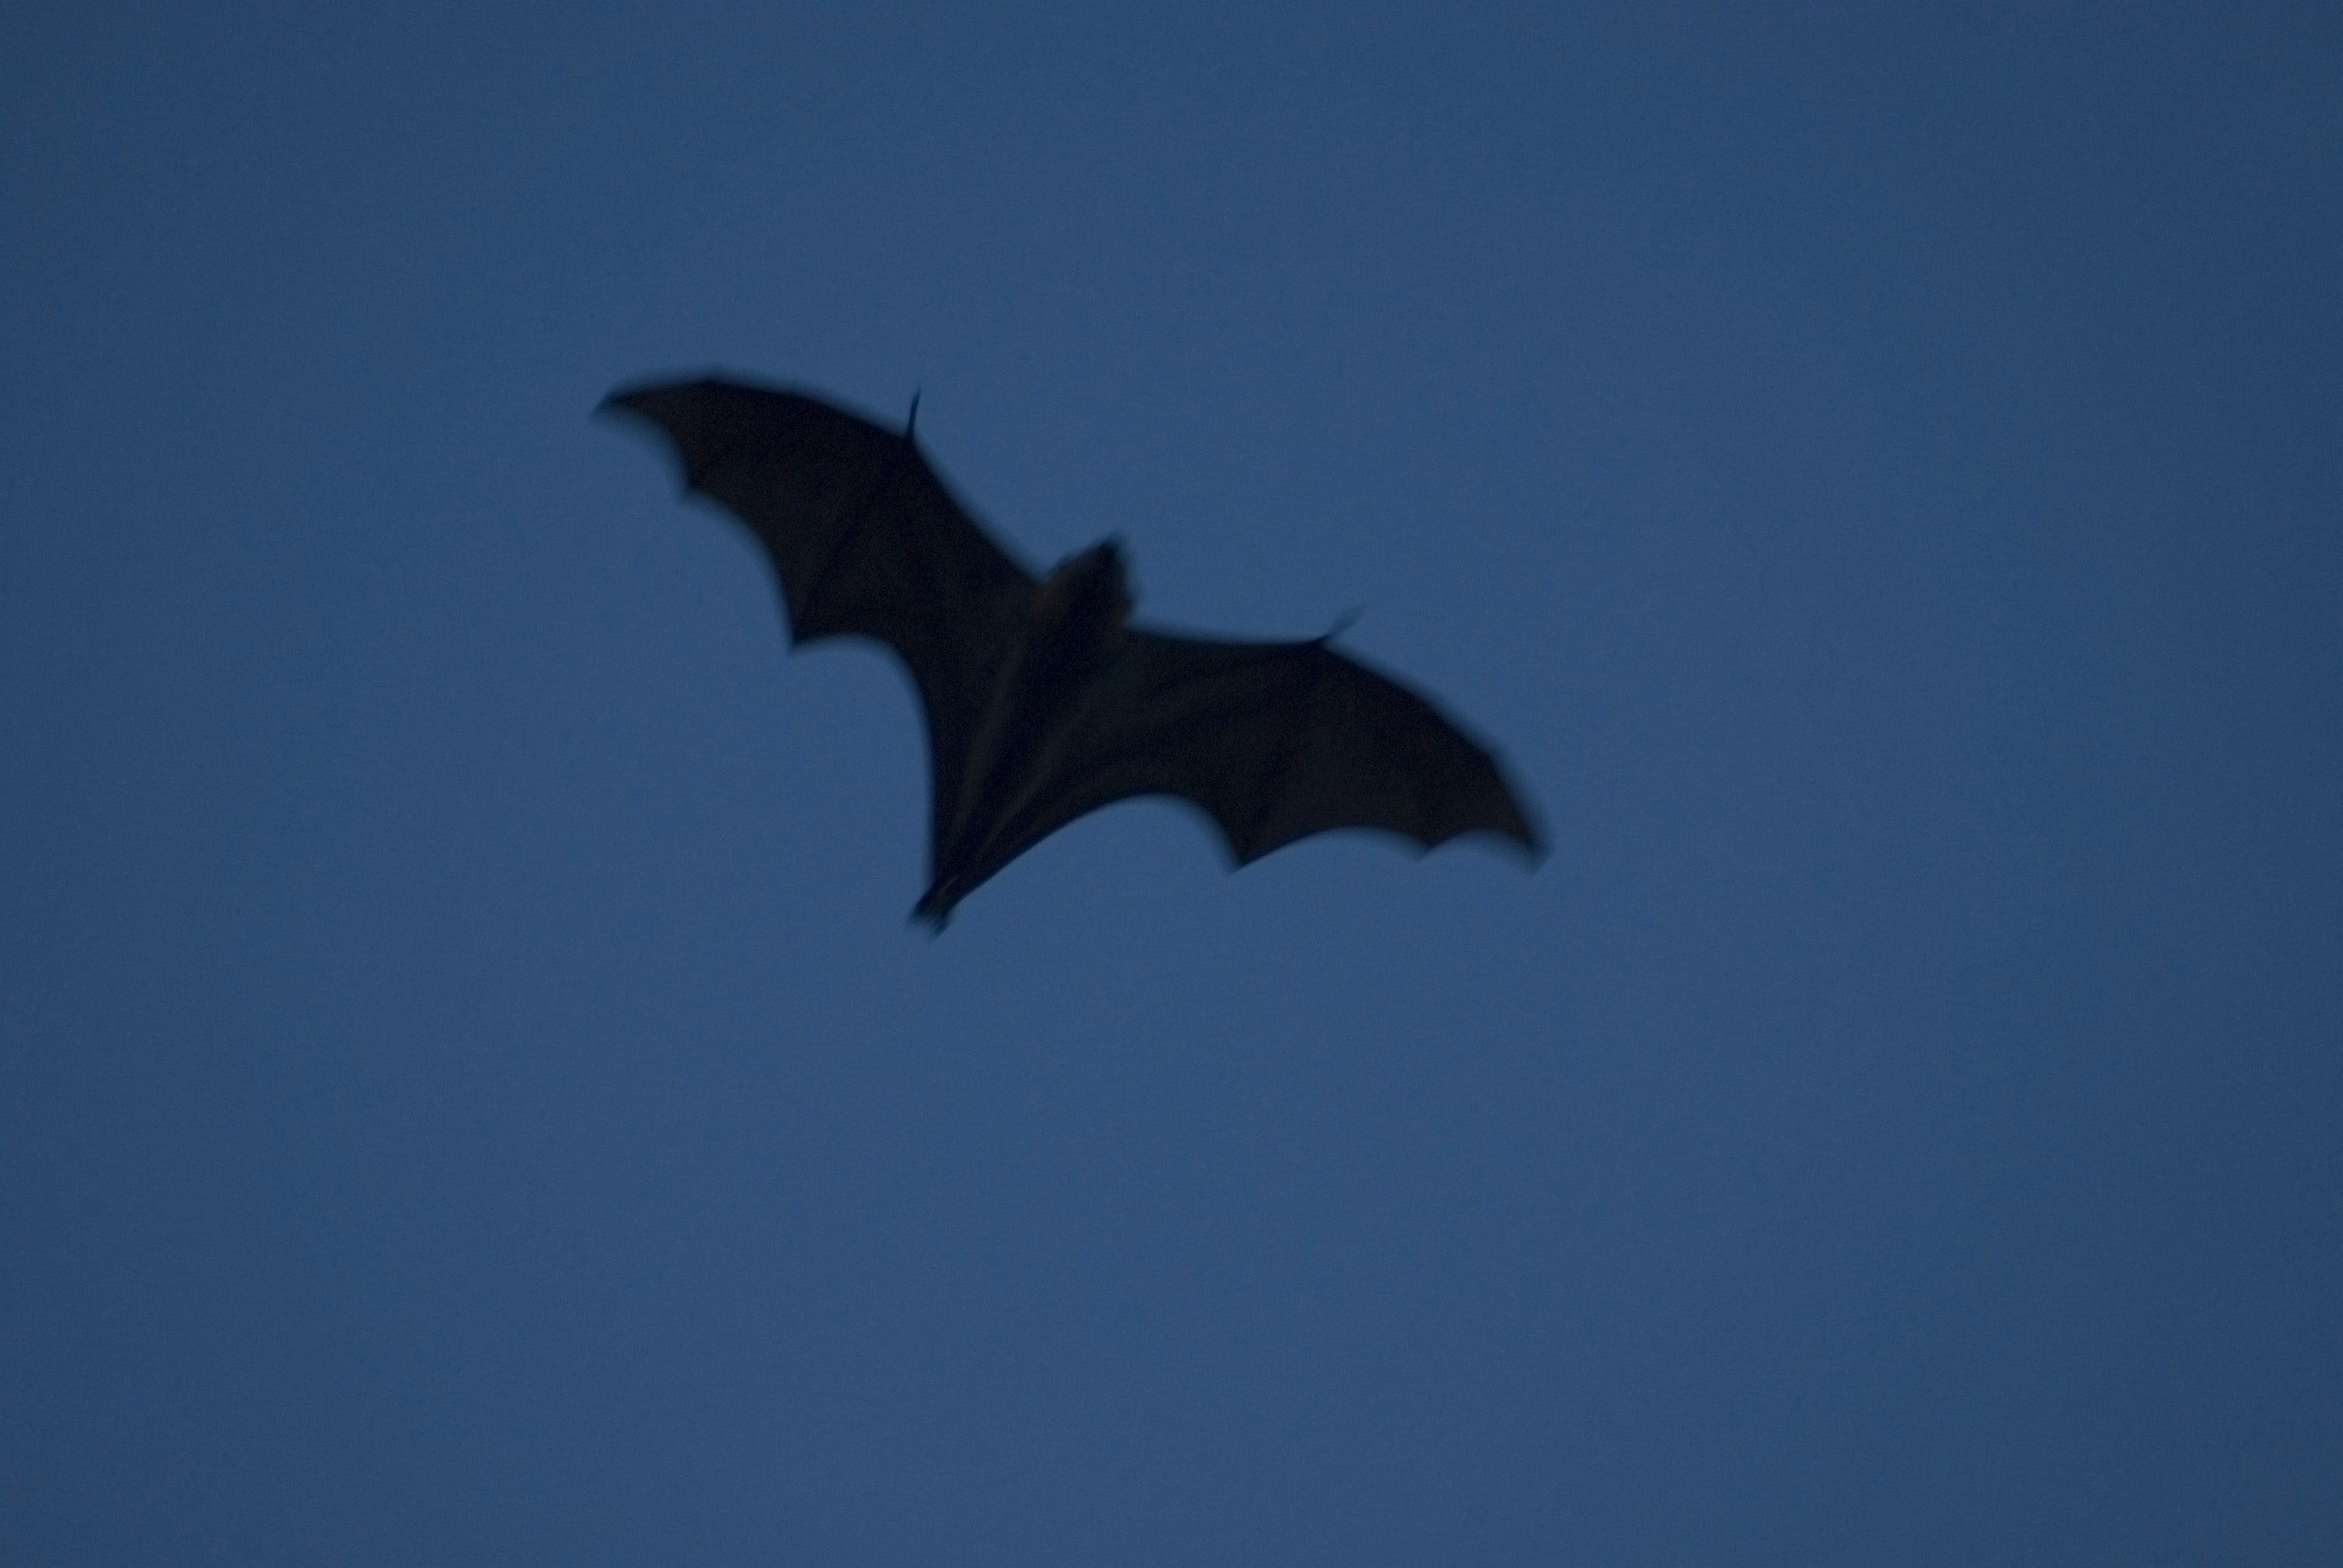 Image of bat at dusk | CreepyHalloweenImages